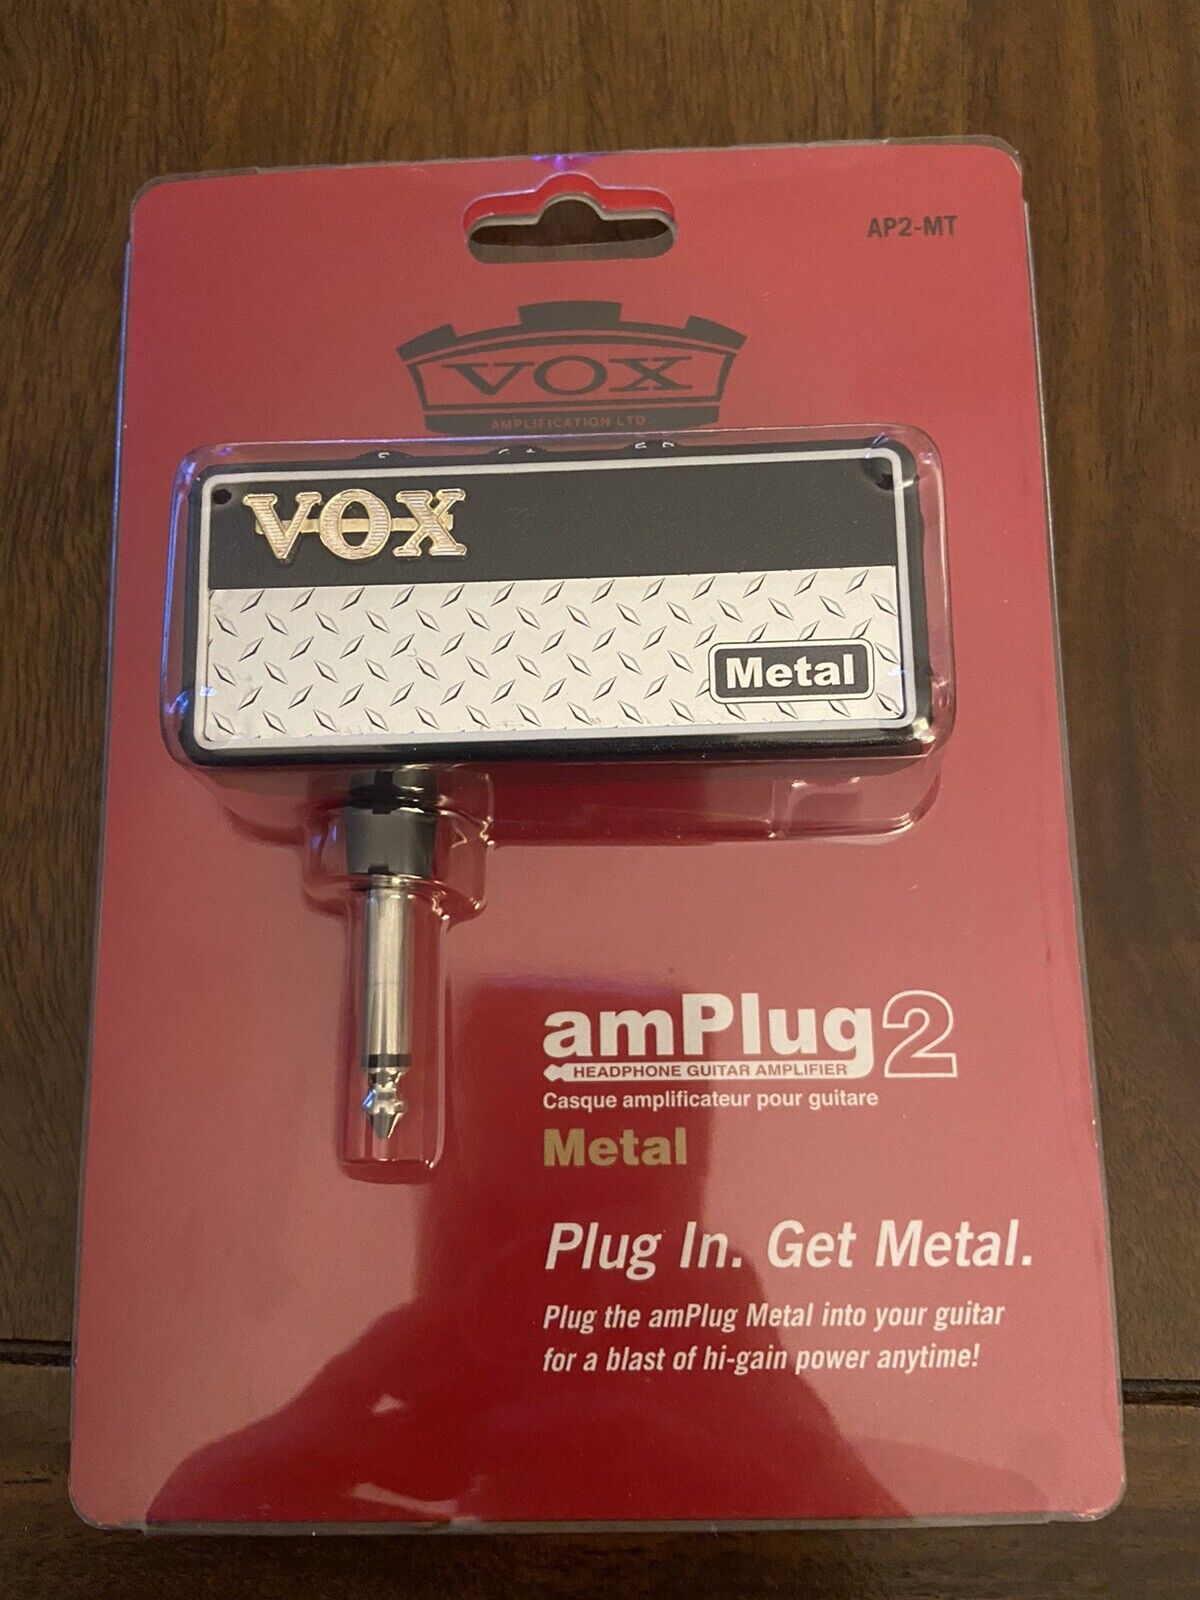 Vox amPlug 2 Metal & AC130 Headphone Amp